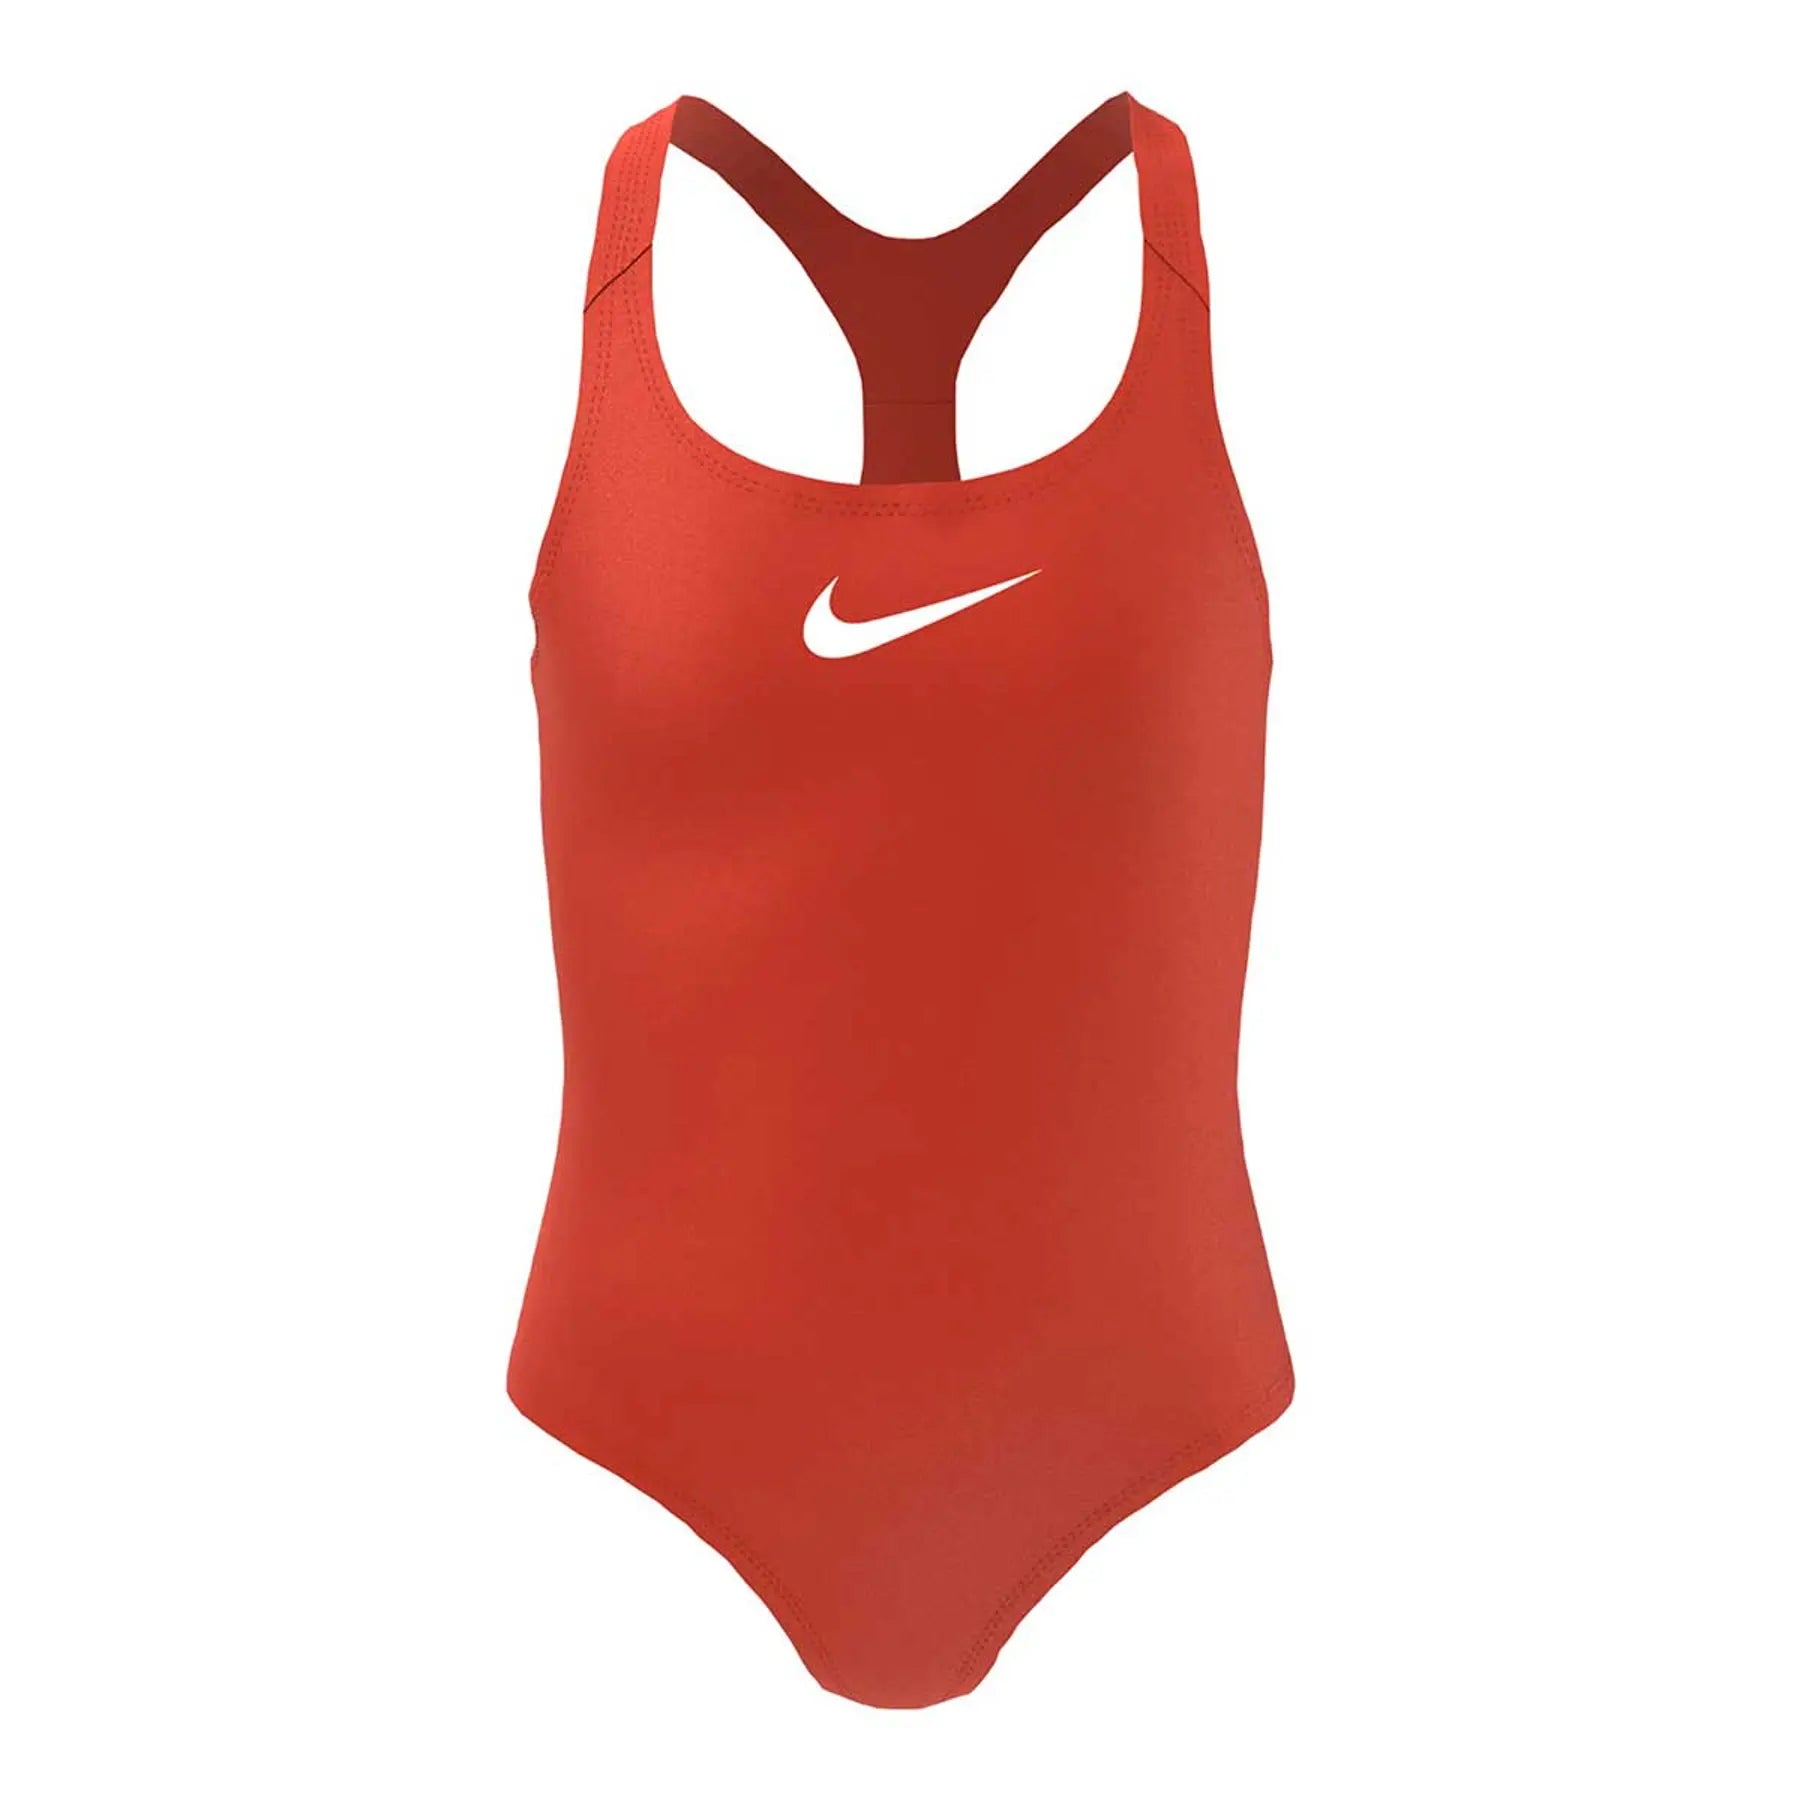 rot Badeanzug, Nike Raceback Swim, Damen,